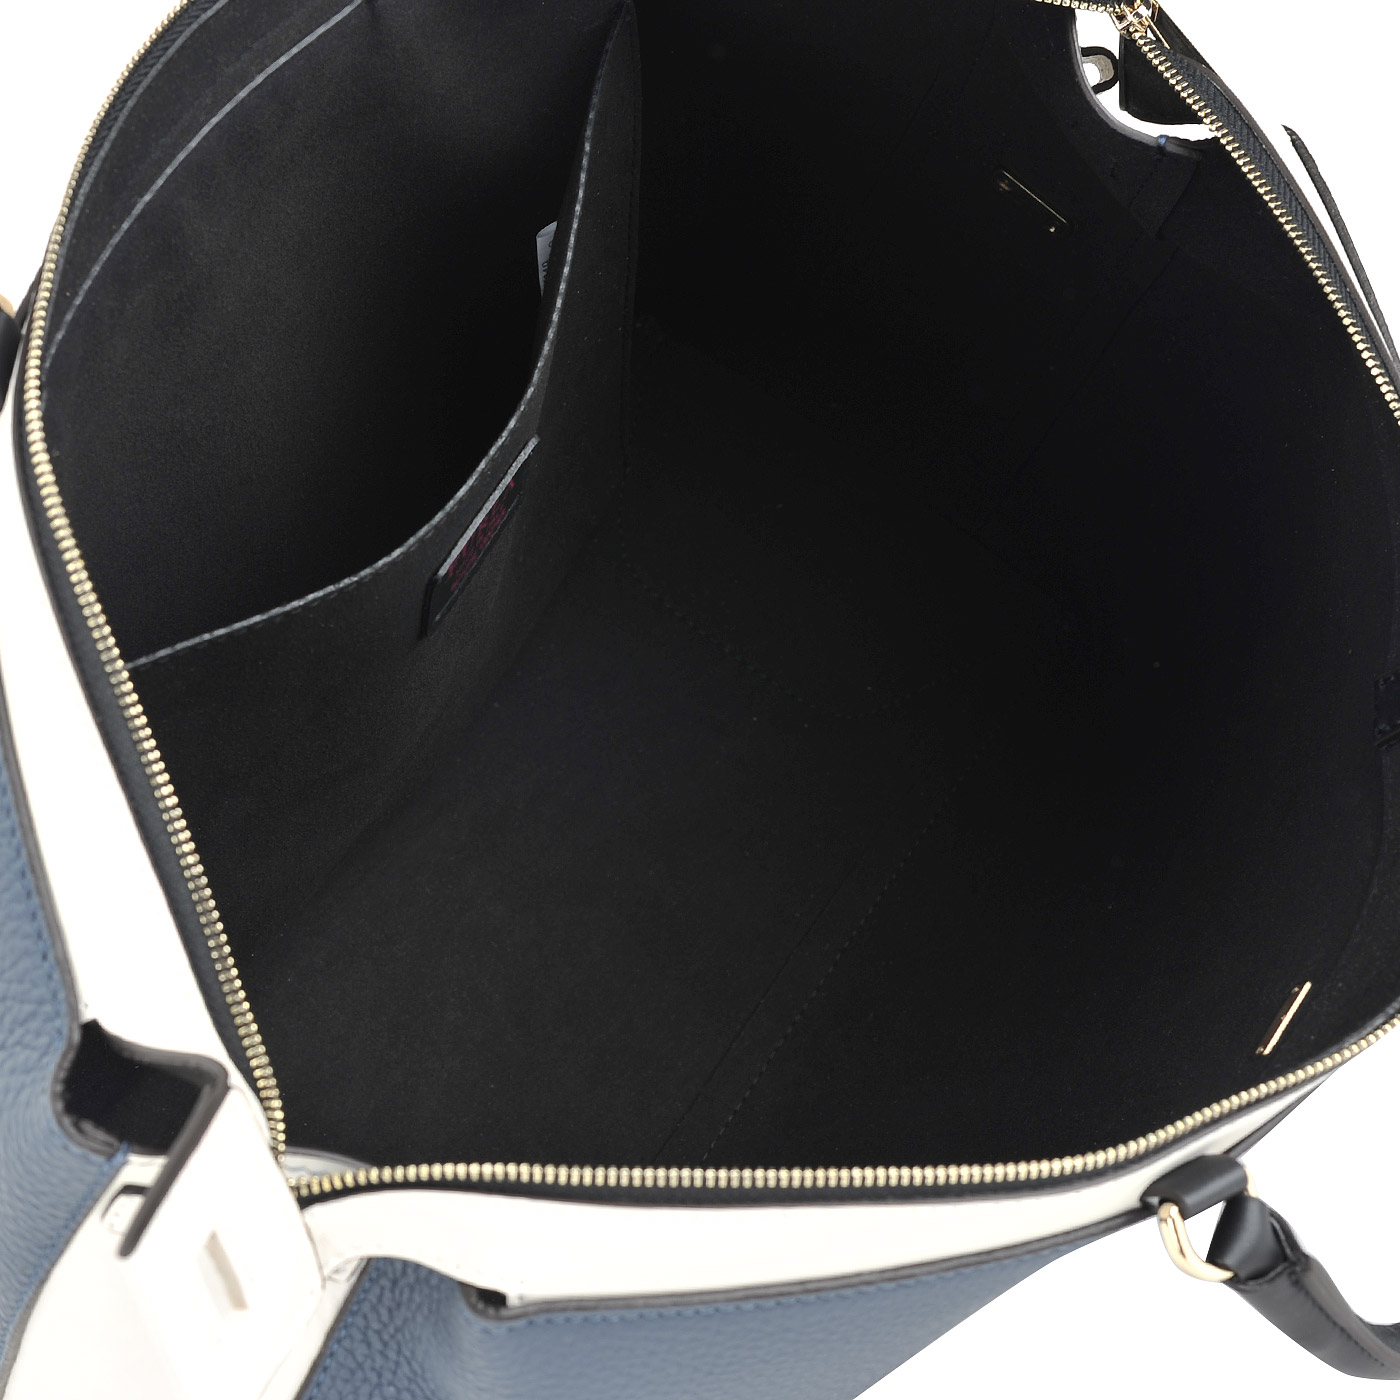 Женская кожаная сумка с плечевым ремешком Furla Blogger